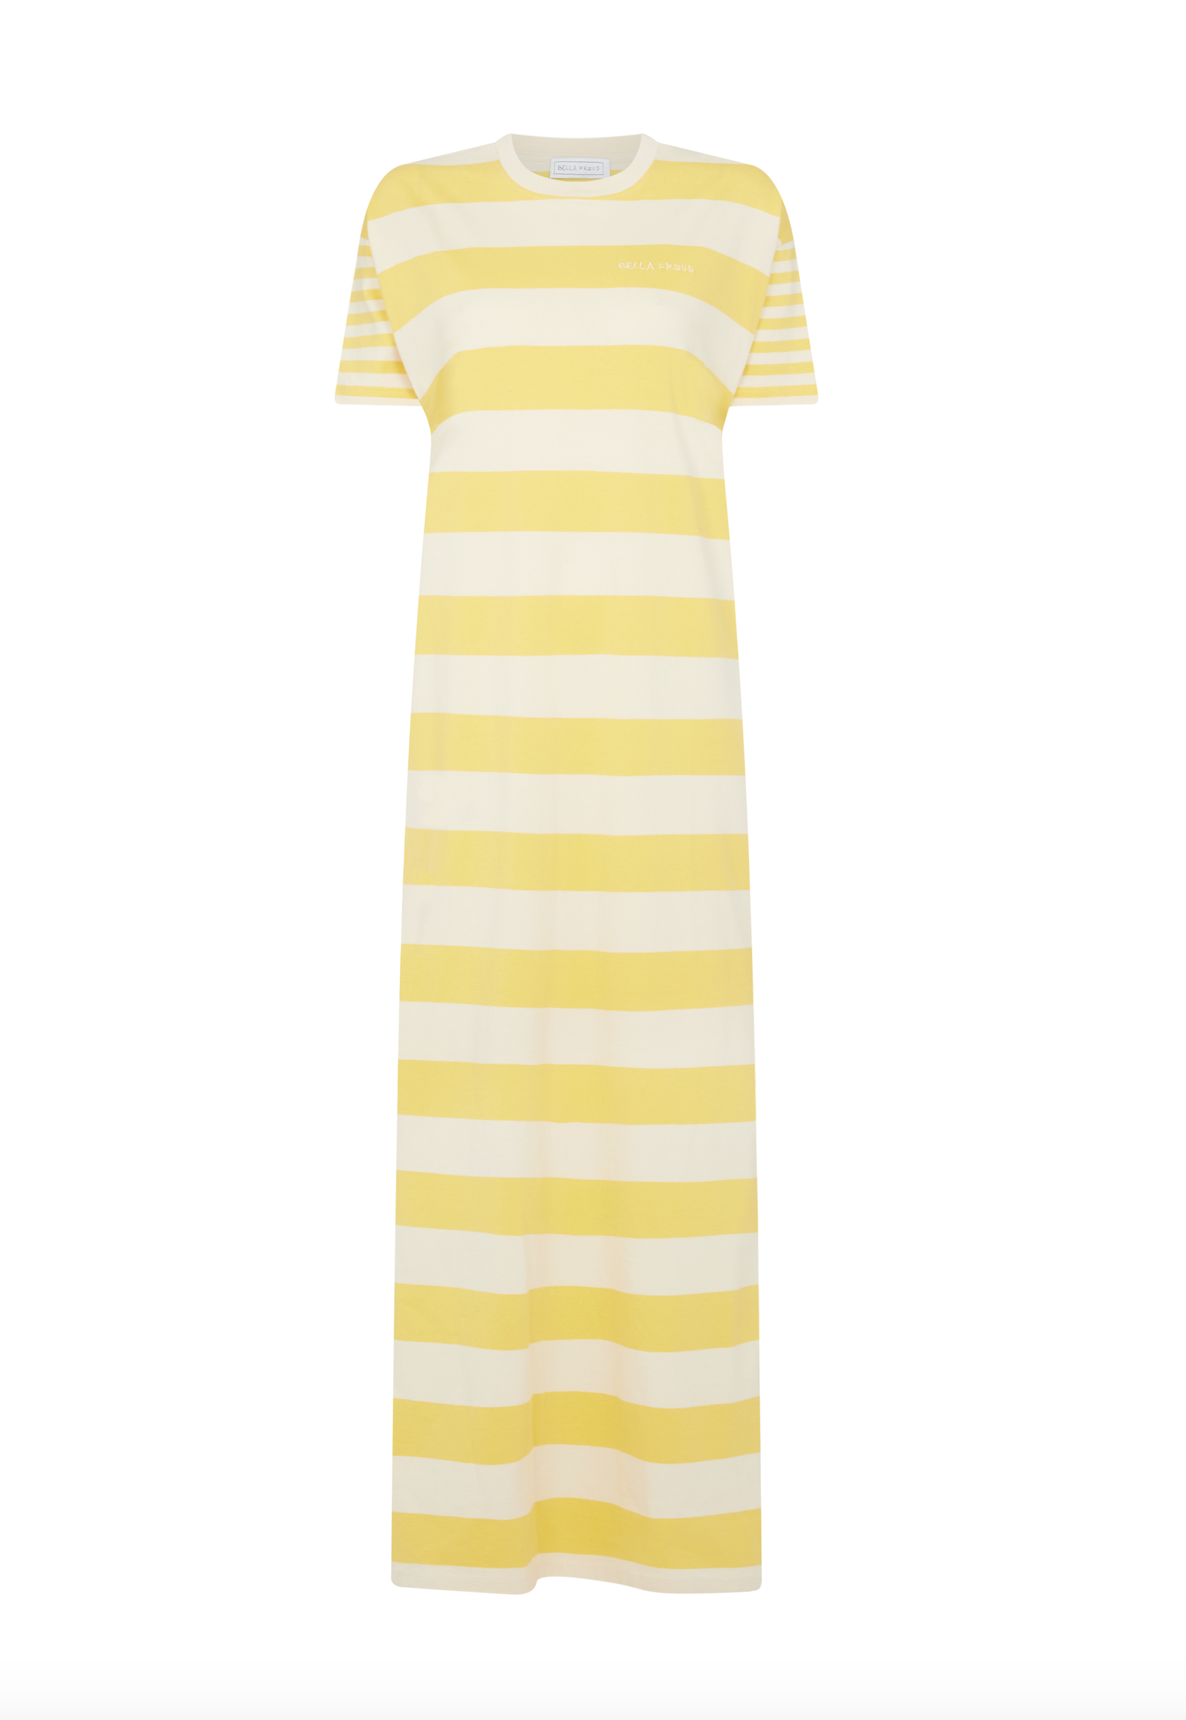 Bella Freud - Yellow Sunshine Striped T-Shirt Dress - Image 2 of 2